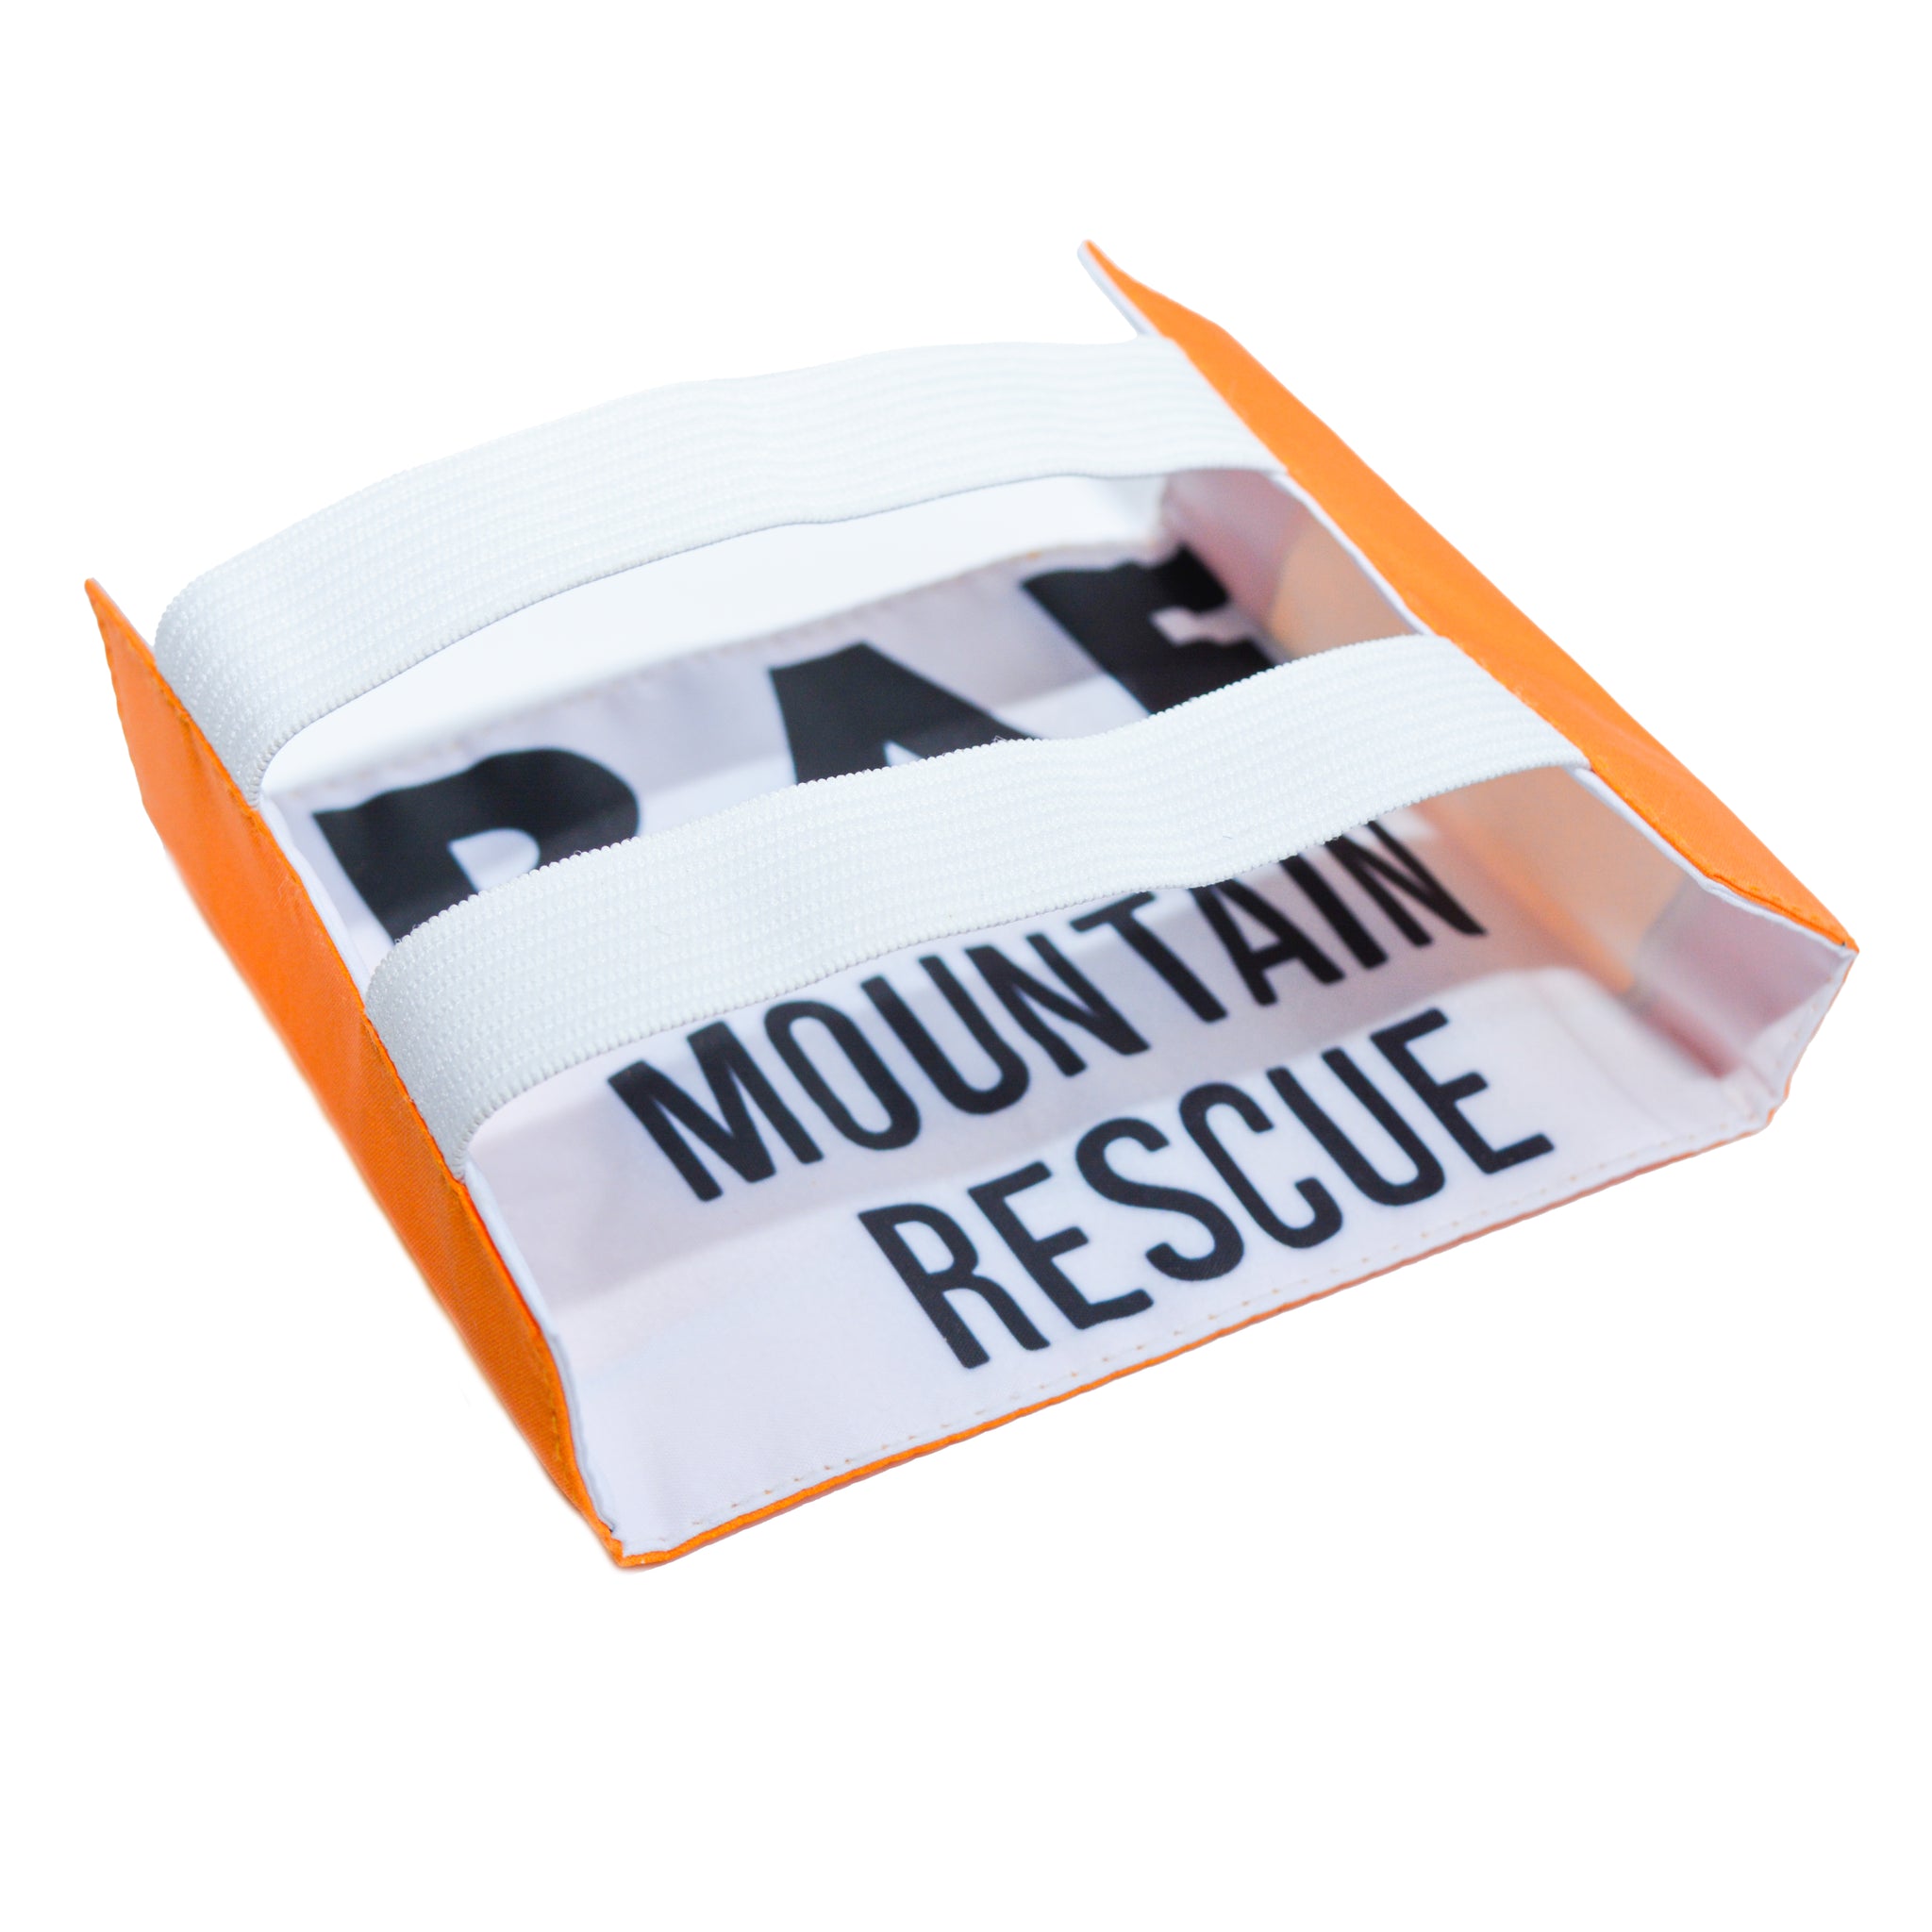 RAF Mountain Rescue Armlet